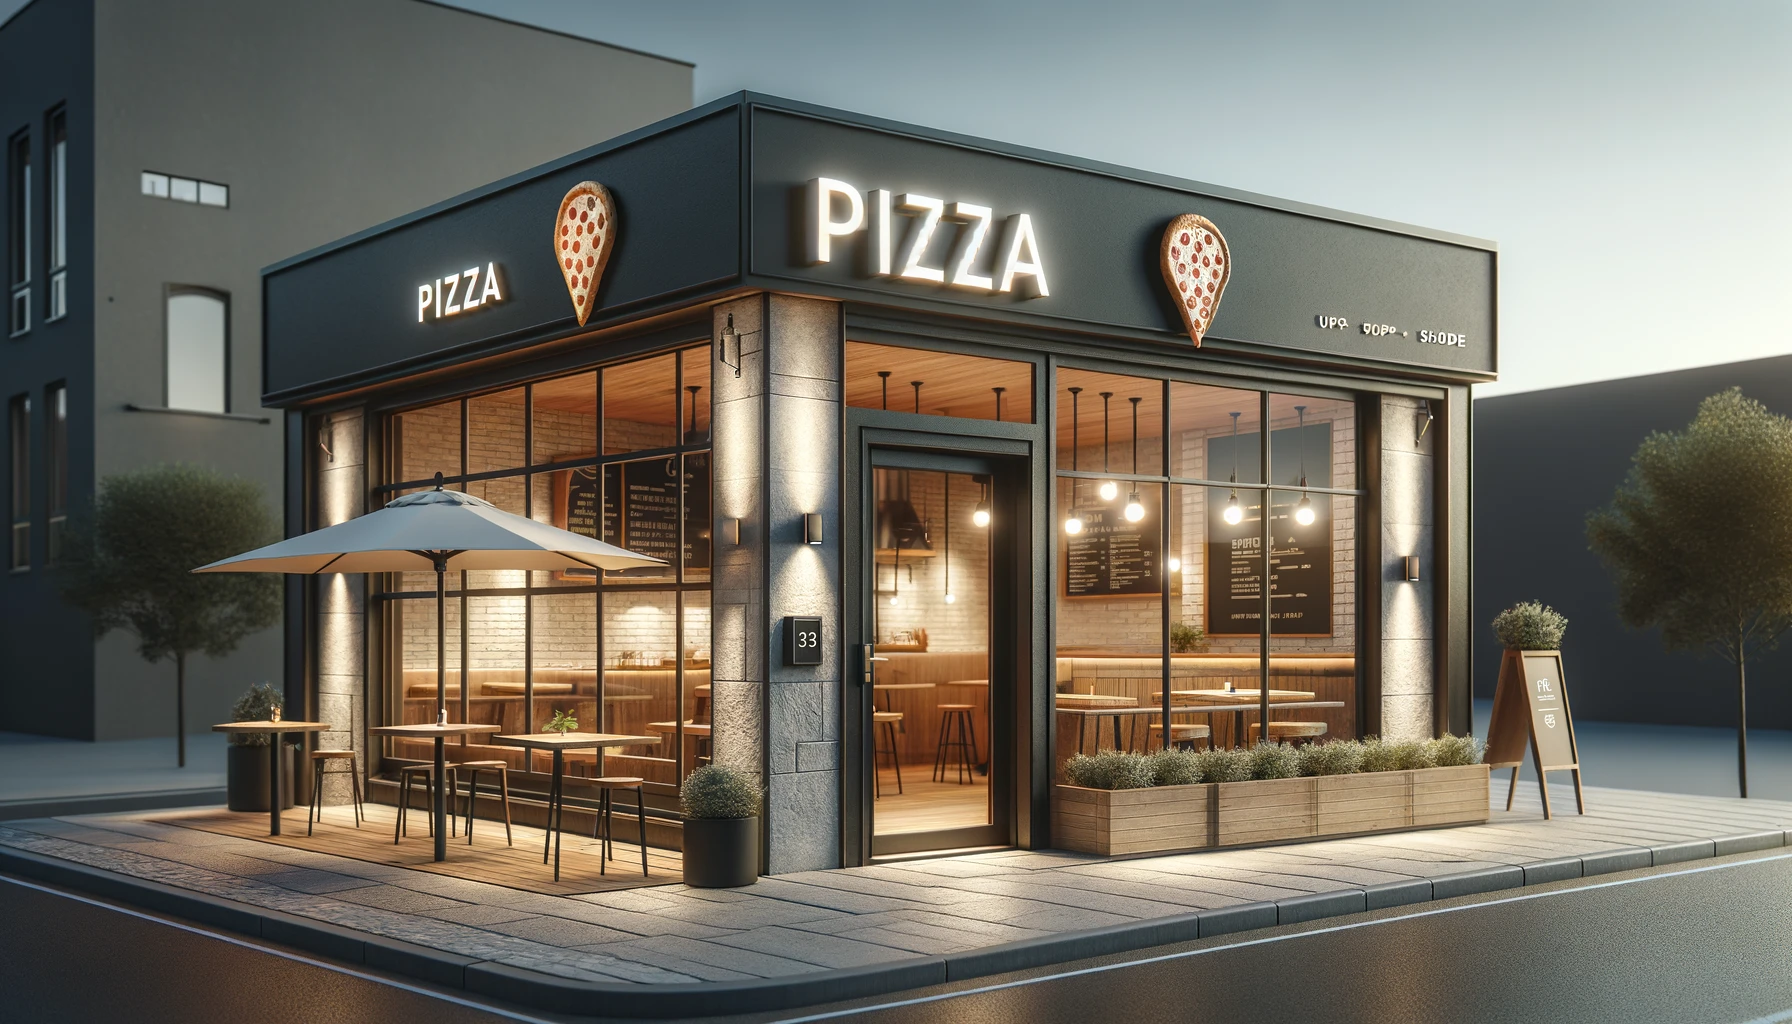 pizza shop front design ideas